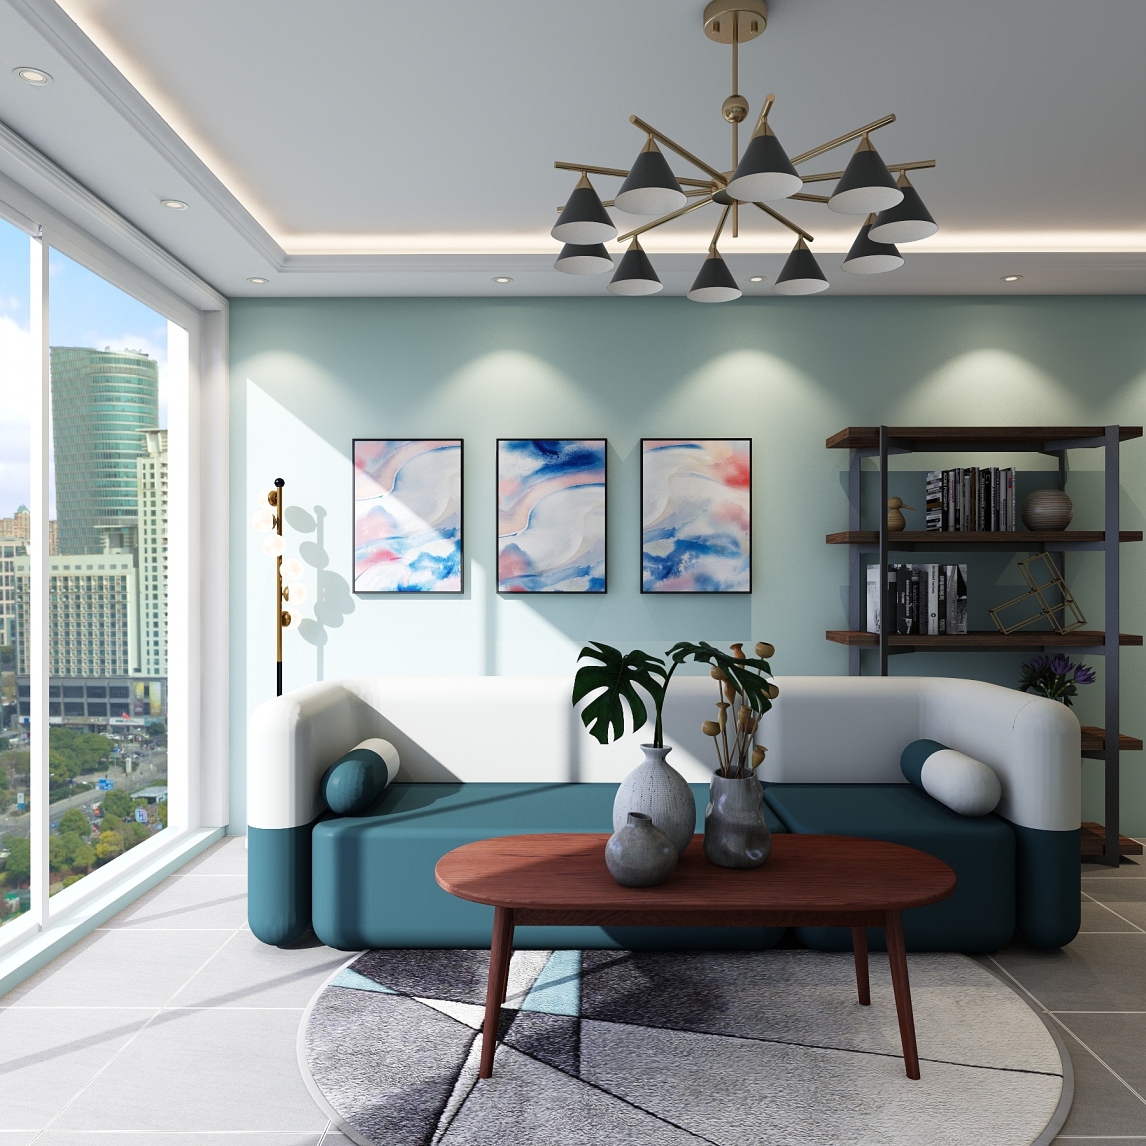 新中式风格客厅蓝色窗帘装修效果图